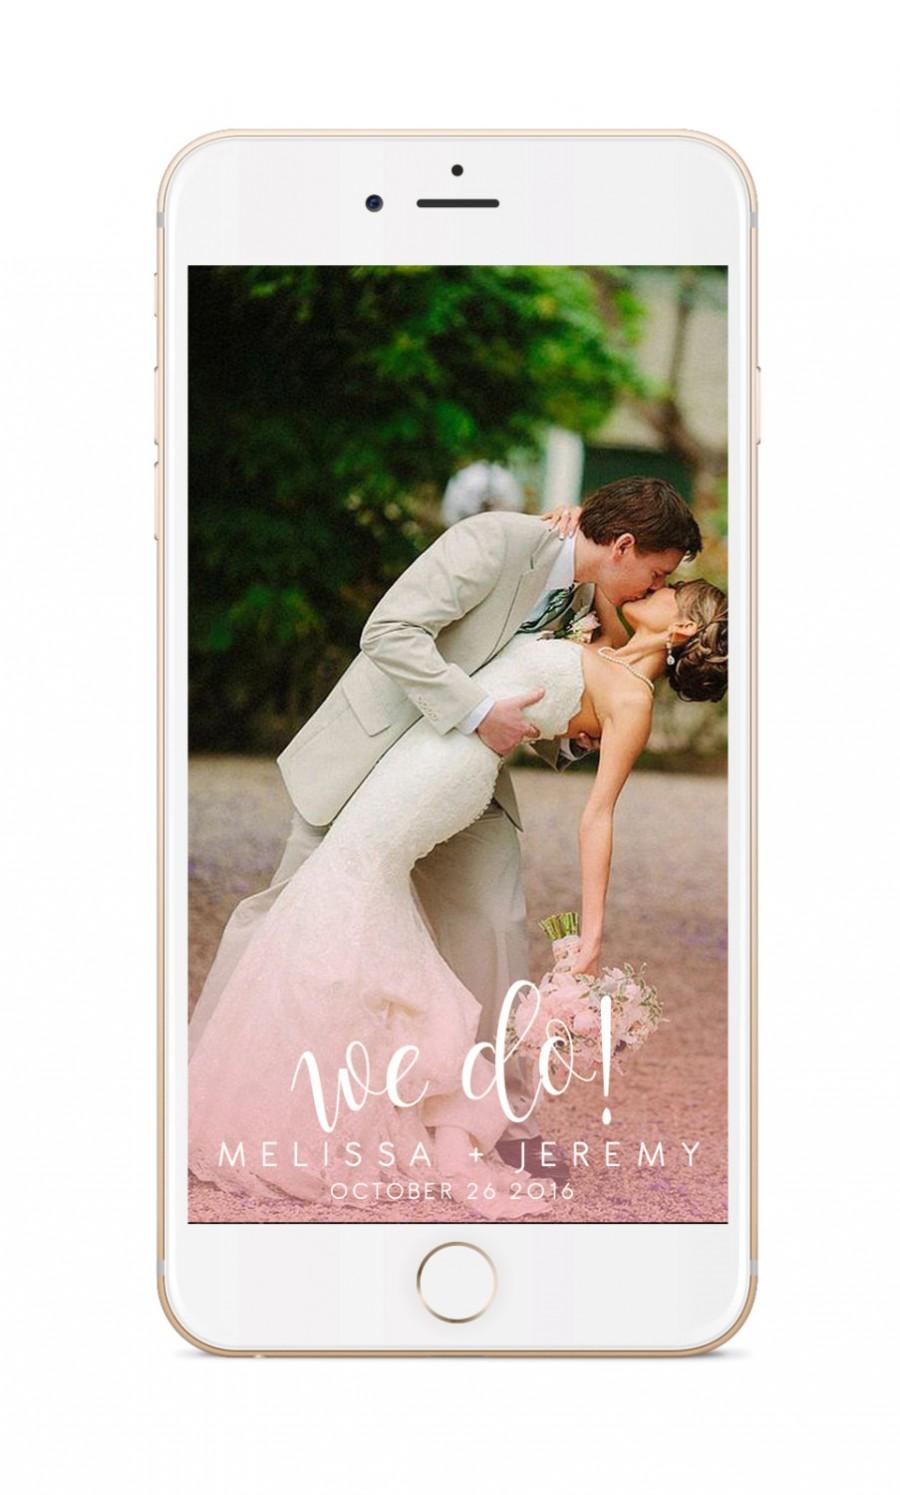 Hochzeit - Snapchat Geofilter Wedding: Custom Geofilter, Snapchat Geofilter, Personalized Geofilter, Wedding Snapchat Filter, Custom Wedding, gift, 003